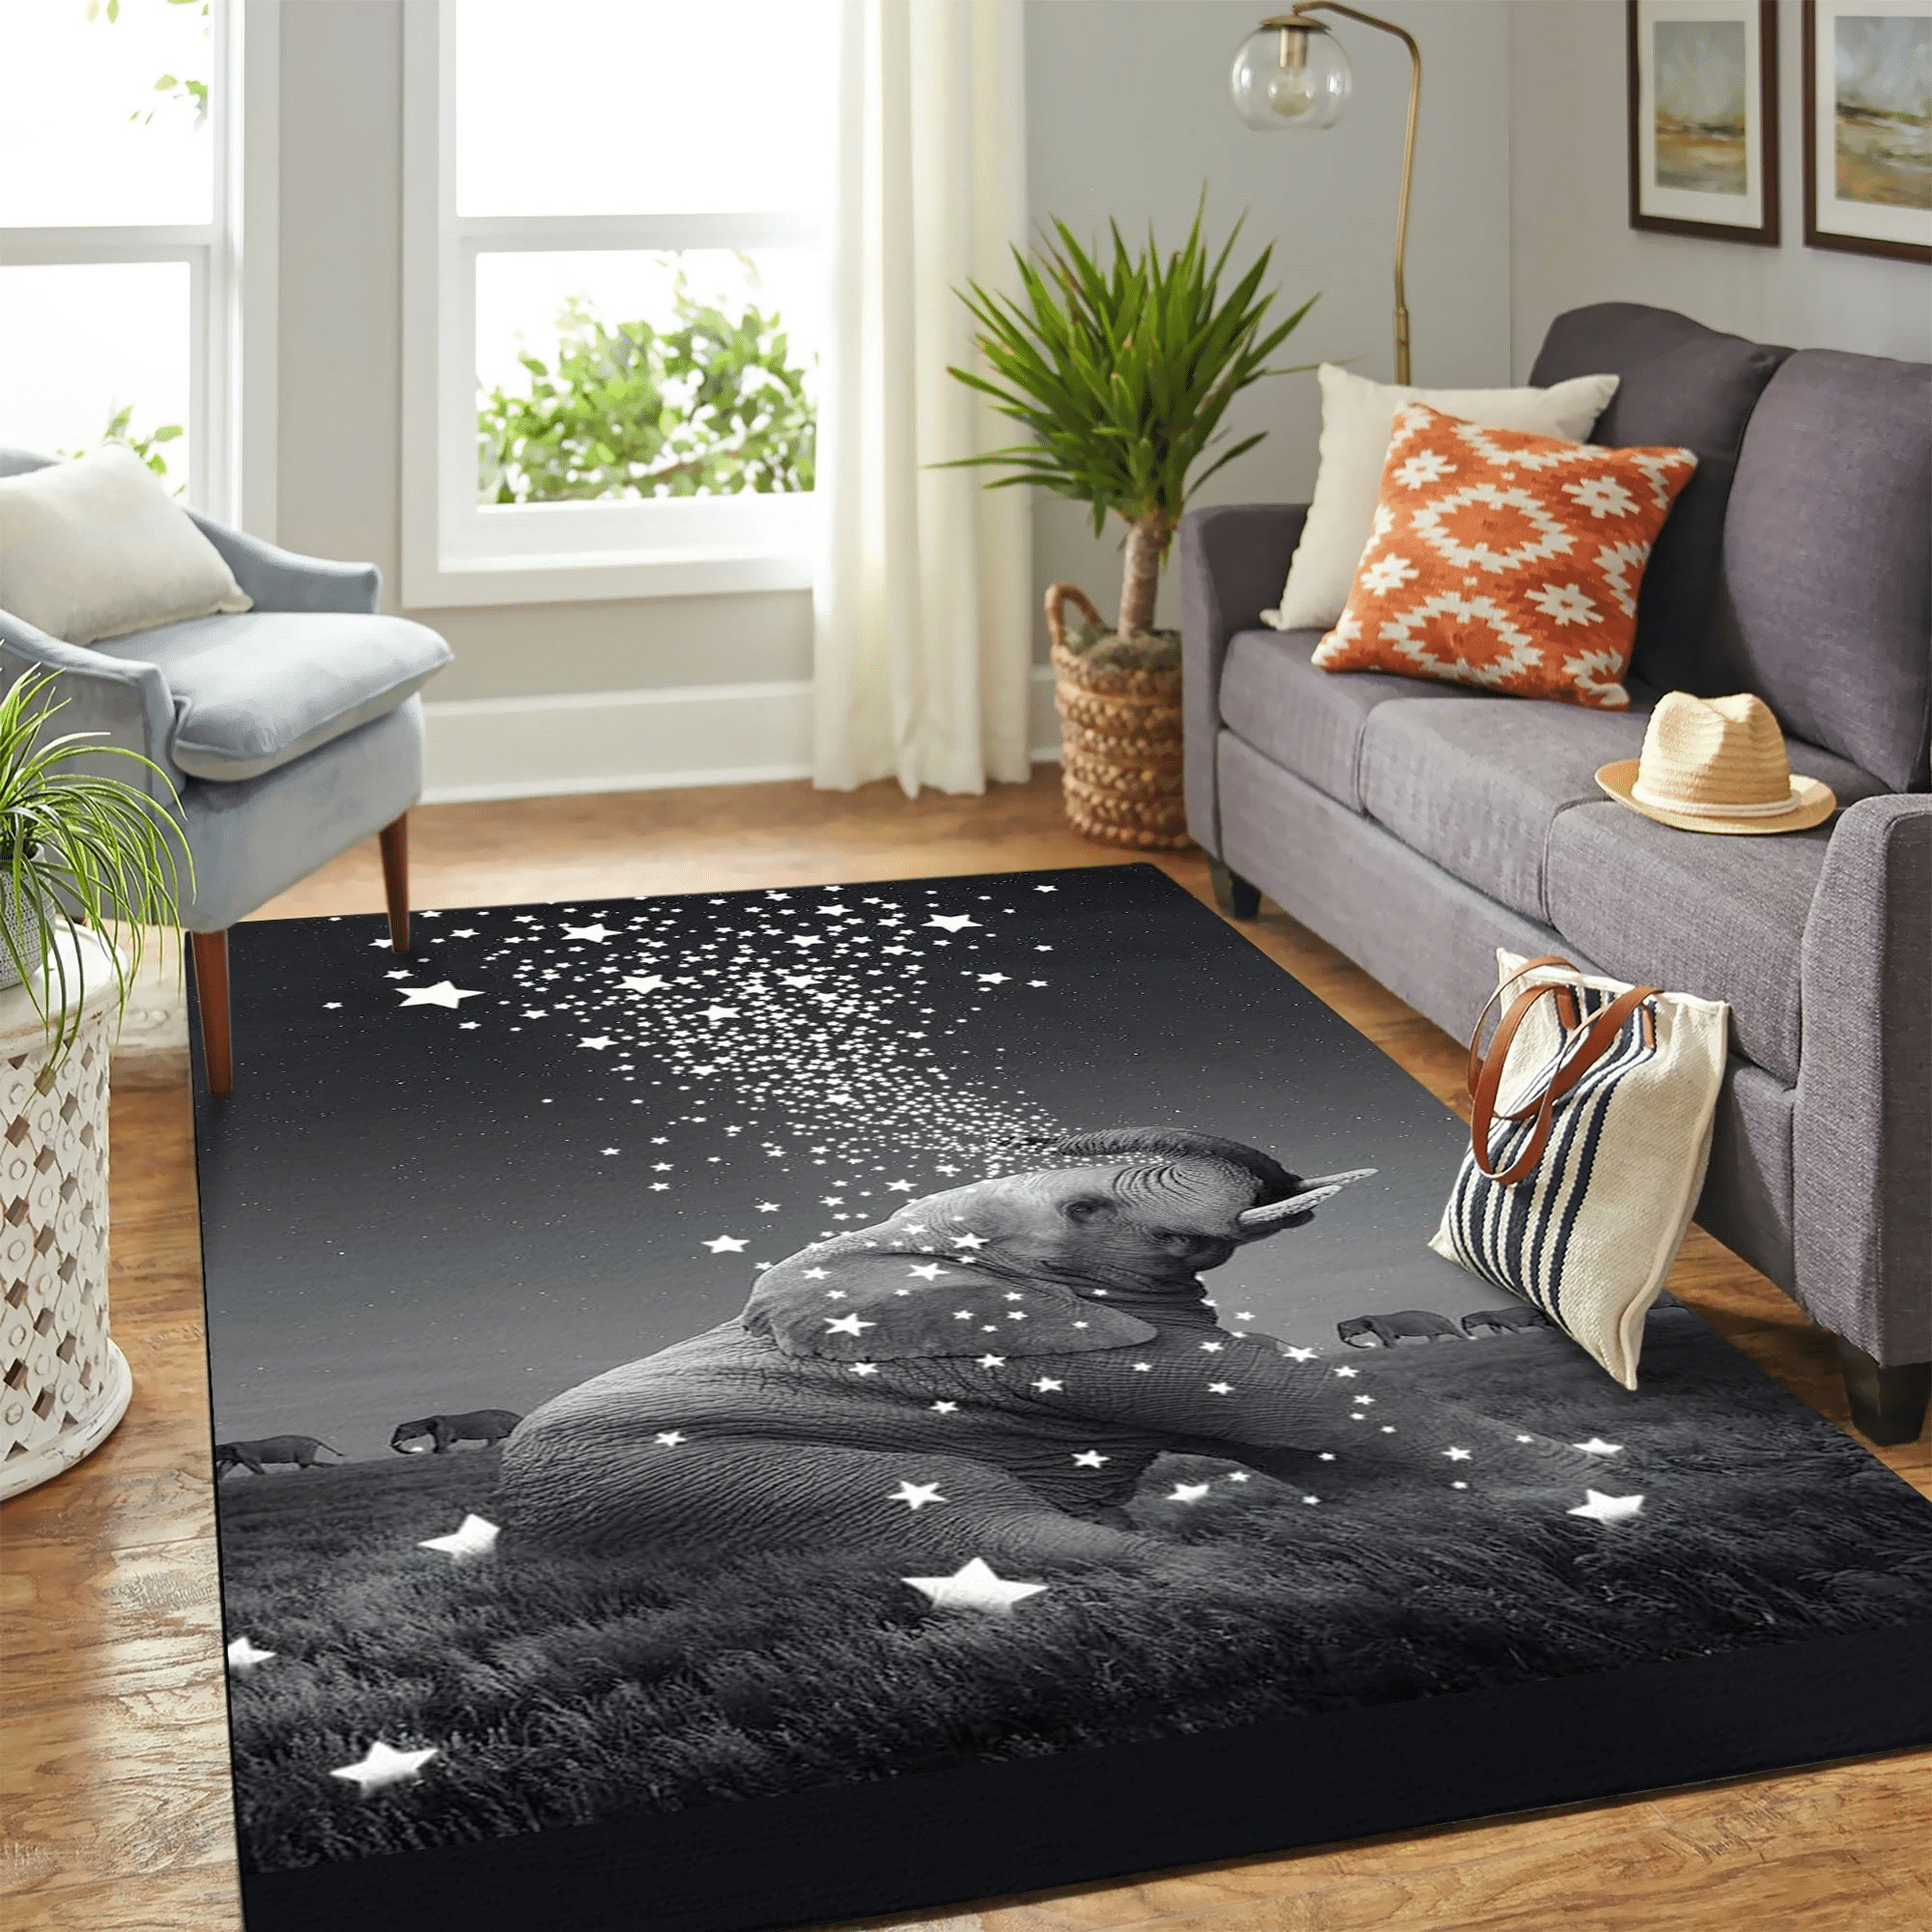 Elephant Star Carpet Floor Area Rug Chrismas Gift - Indoor Outdoor Rugs 1